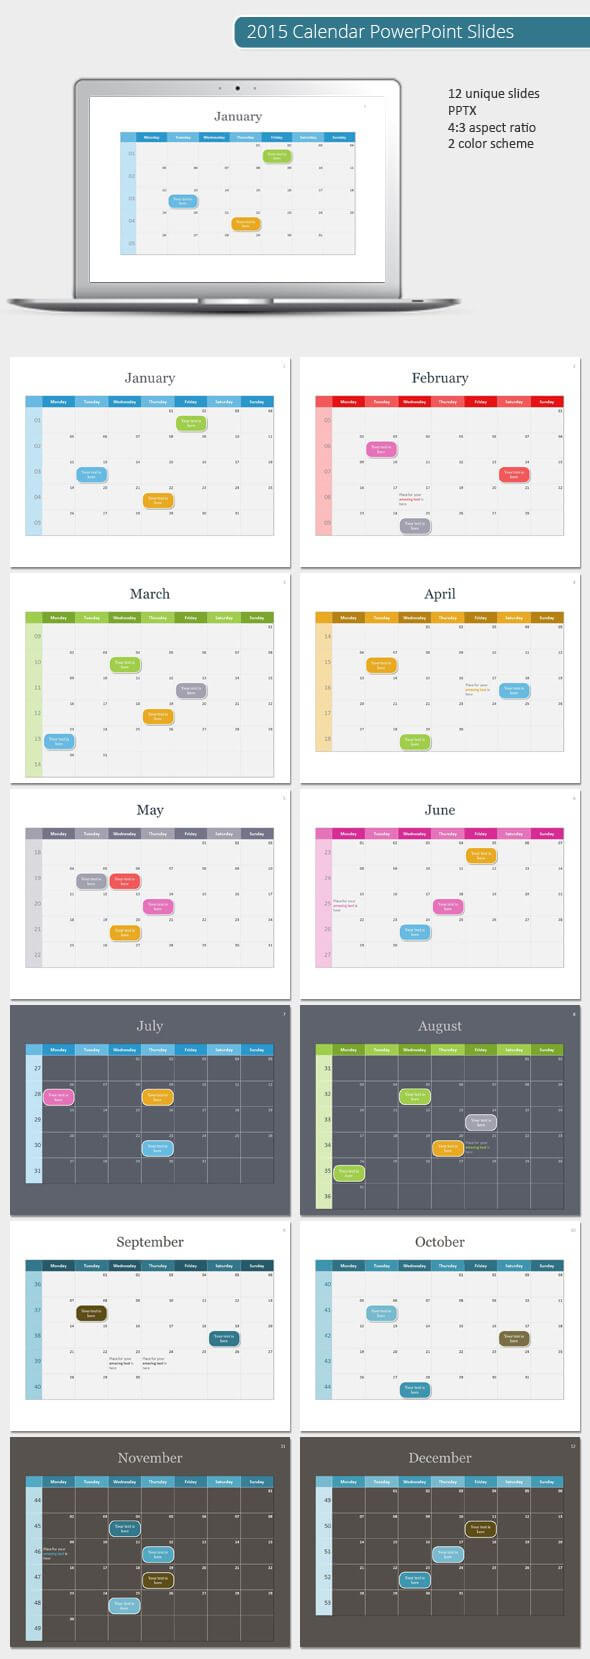 2015 Calendar Powerpoint Template (Powerpoint Templates Regarding Powerpoint Calendar Template 2015